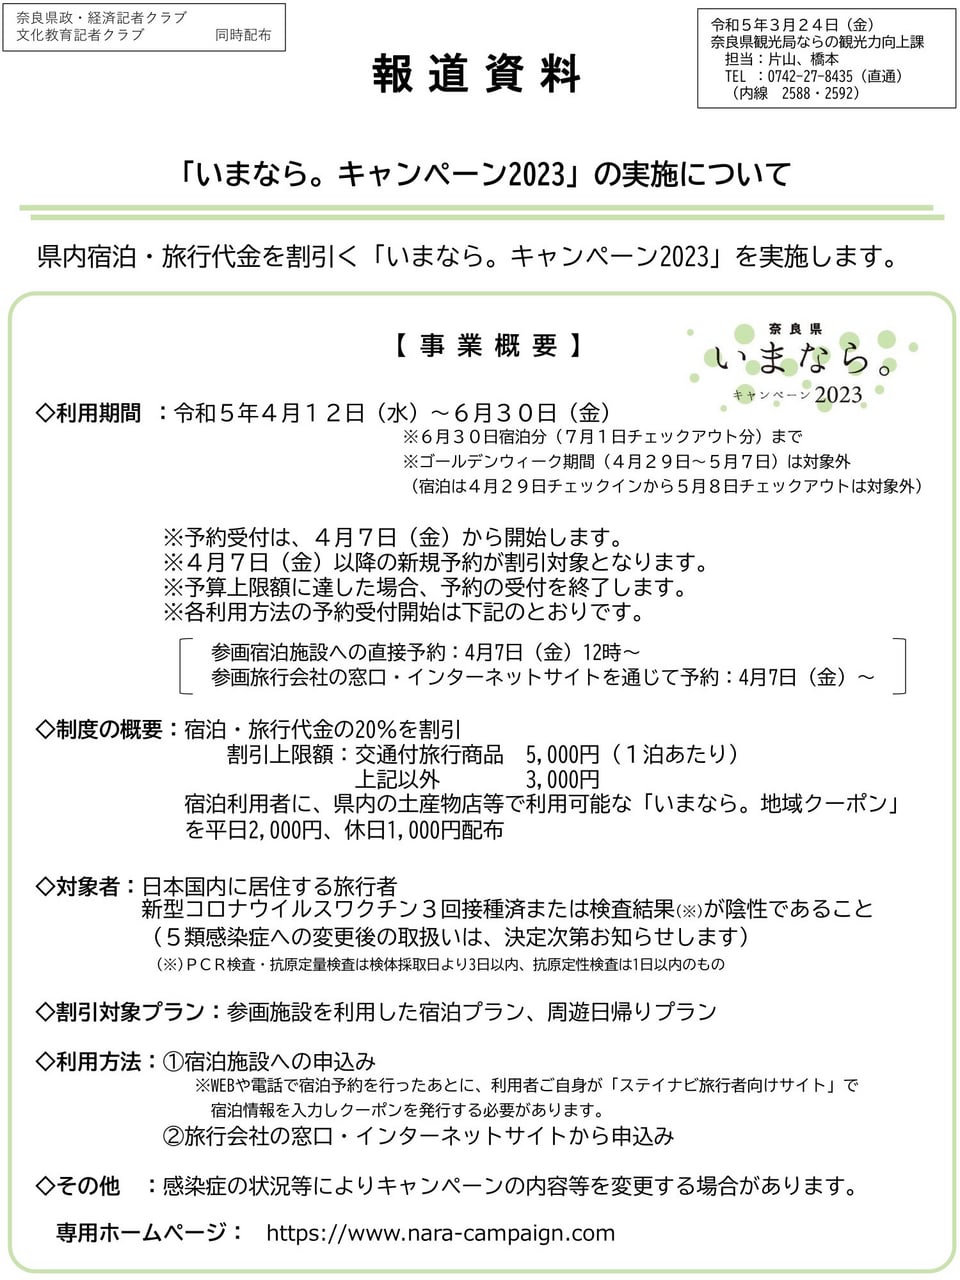 奈良県報道資料「いまなら。キャンペーン2023」について